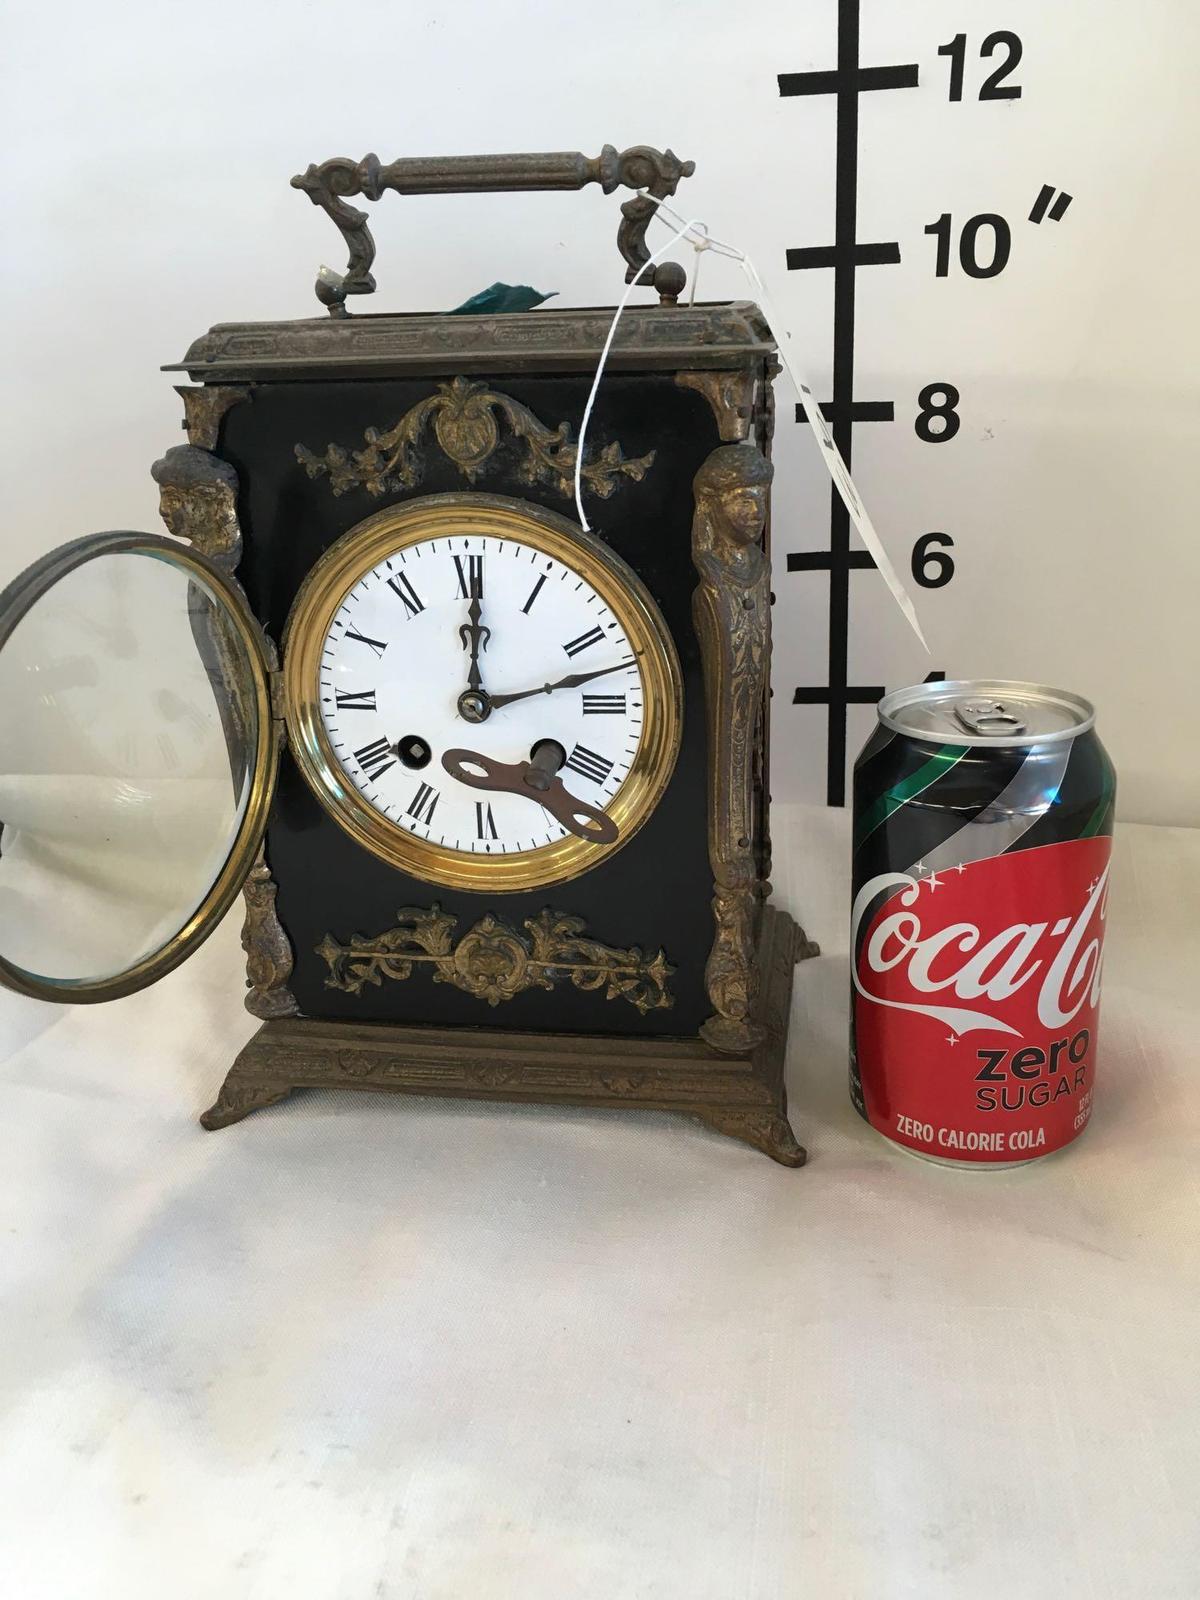 Vintage mantle wind bracket clock with key